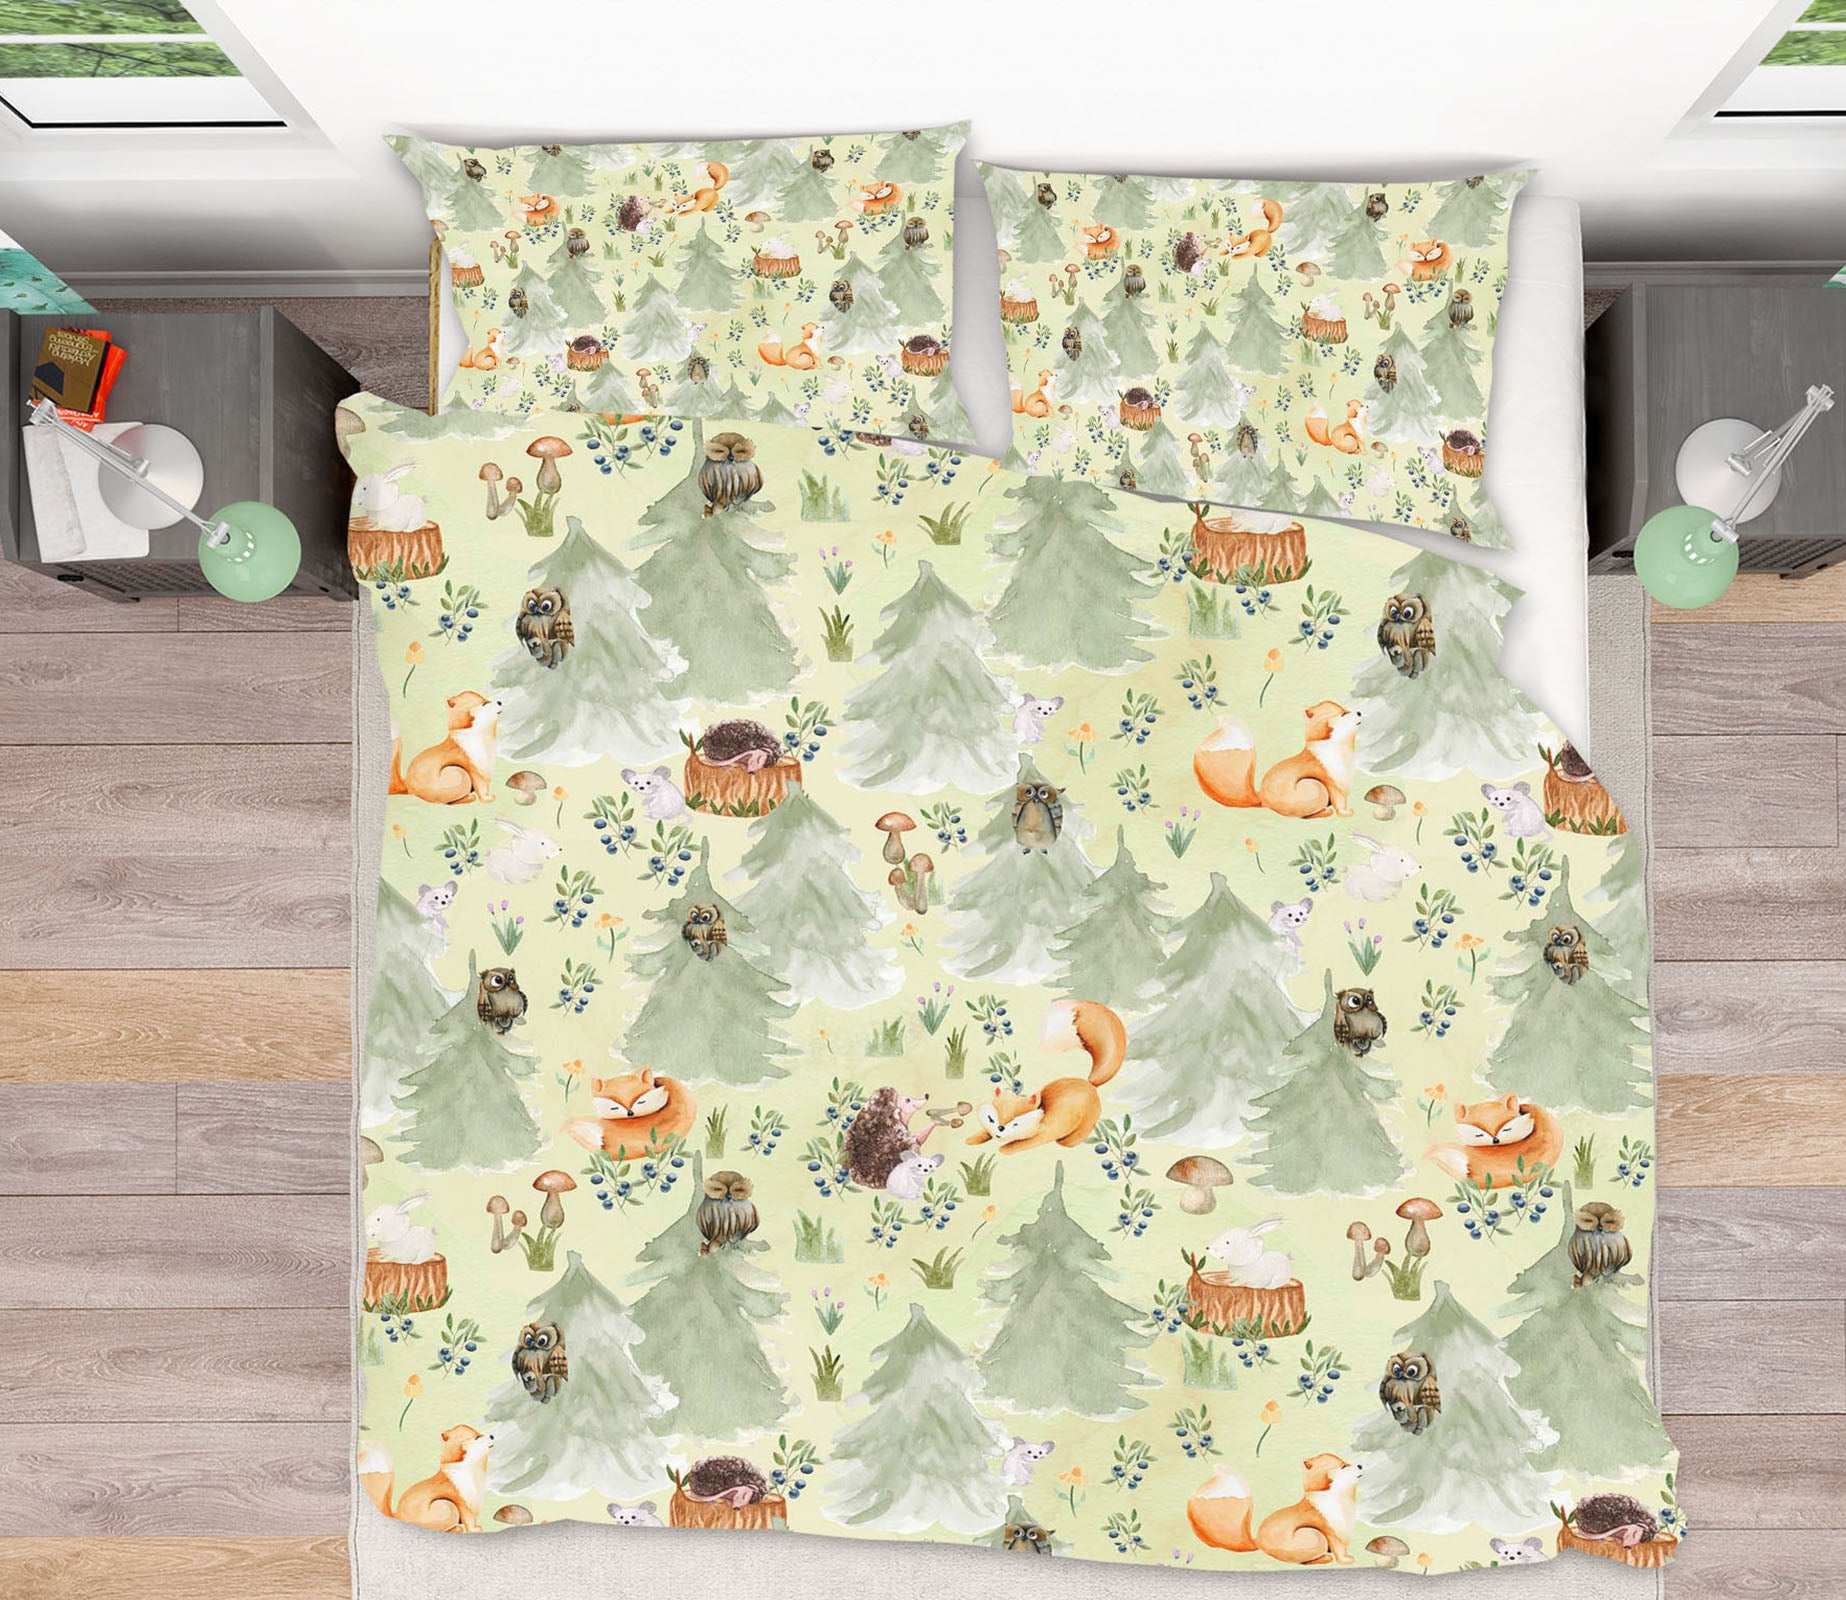 3D Owl Fox 195 Uta Naumann Bedding Bed Pillowcases Quilt